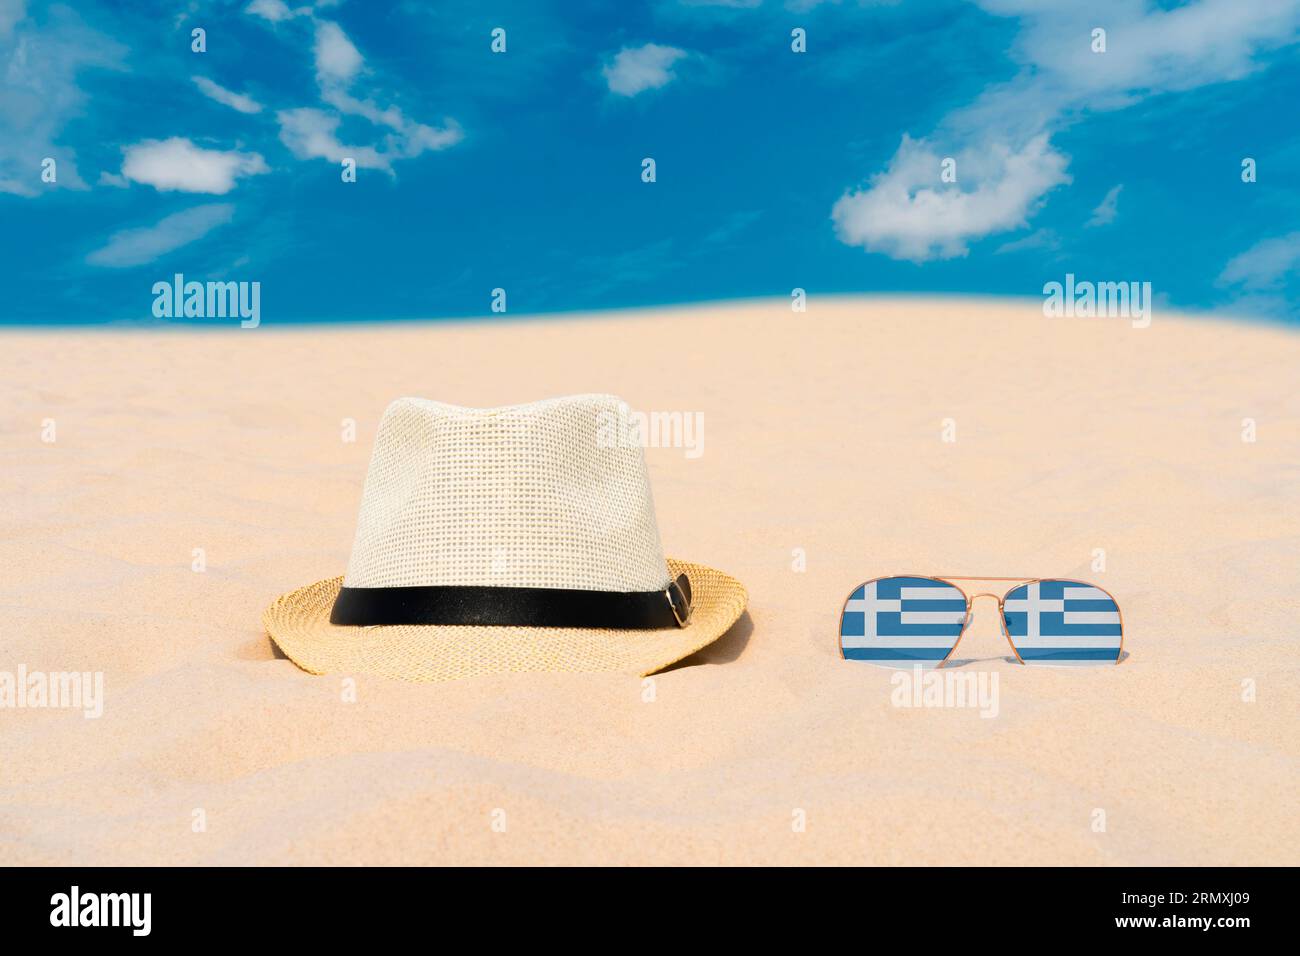 Gli occhiali da sole con occhiali sotto forma di bandiera della Grecia e un cappello giacciono sulla sabbia contro il cielo blu. Concetto di vacanze estive e viaggi in Grecia. Riposo estivo Foto Stock